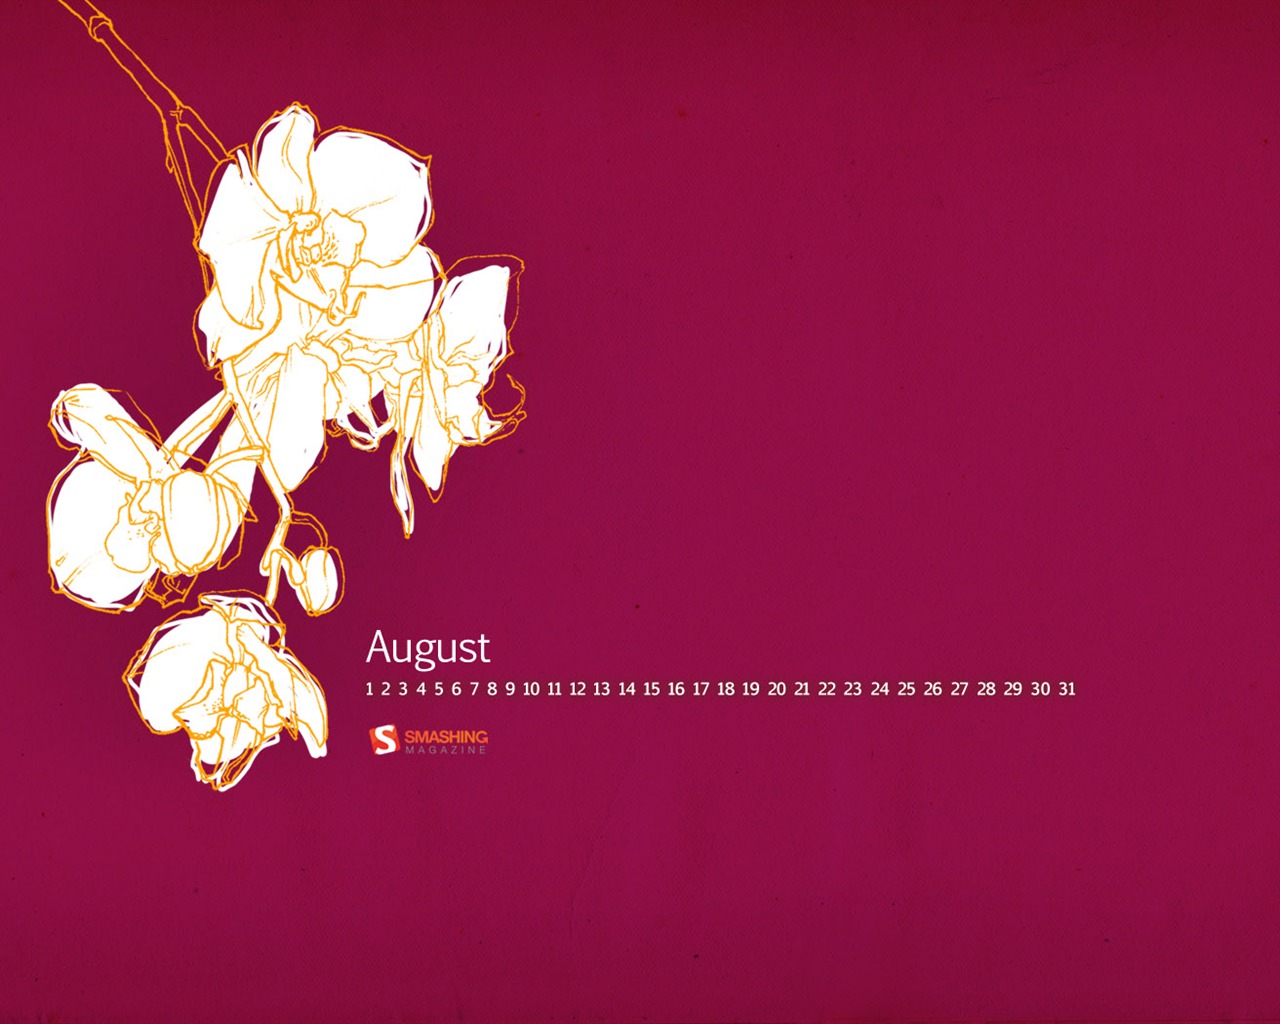 August 2011 calendar wallpaper (2) #6 - 1280x1024